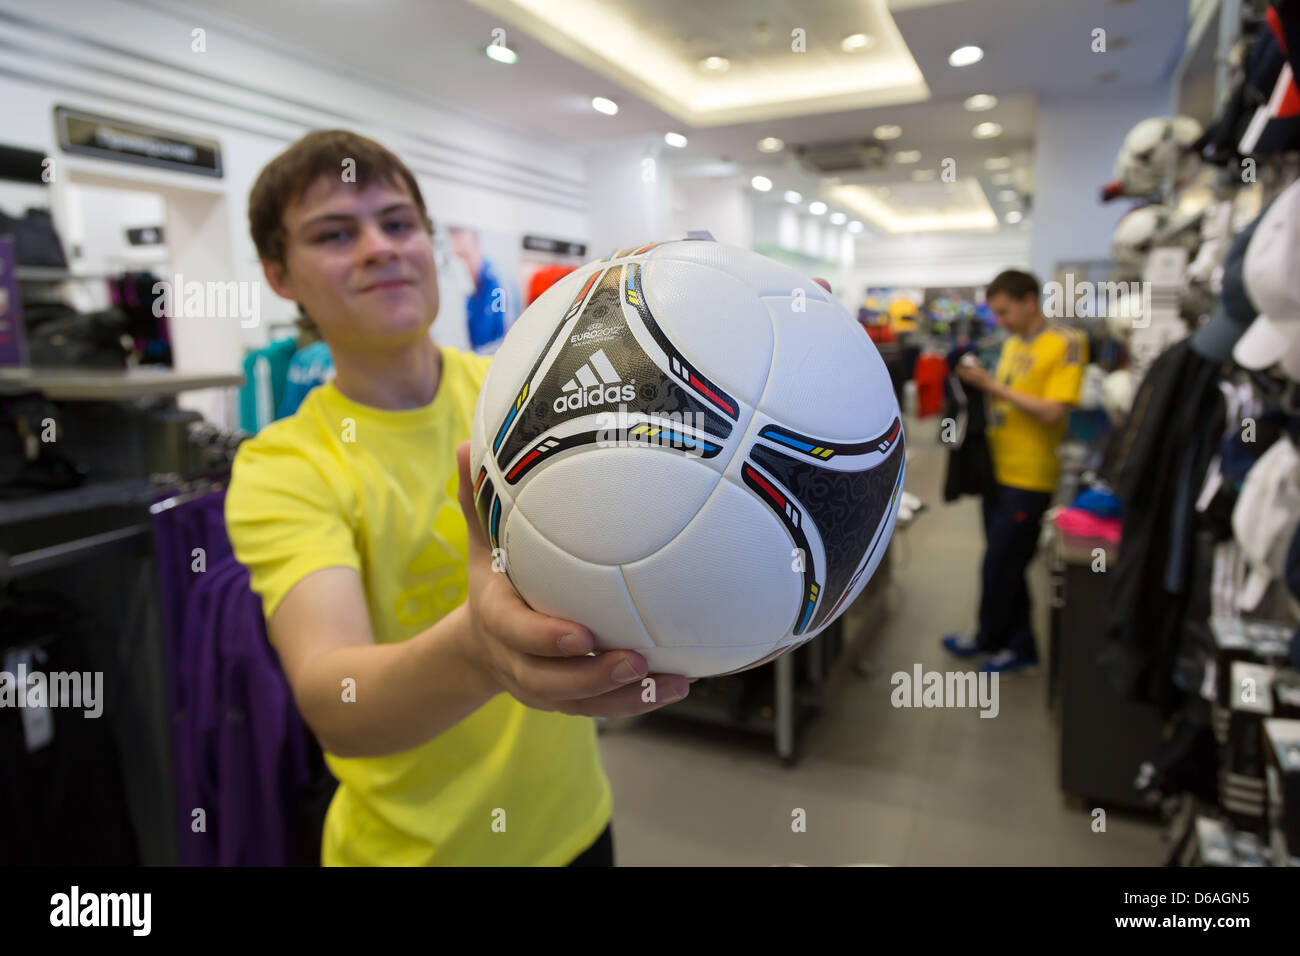 Lviv, Ukraine, un concessionnaire adidas magasins avec la balle officielle du tournoi de l'UEFA EURO 2012, l'adidas Tango 12 Banque D'Images